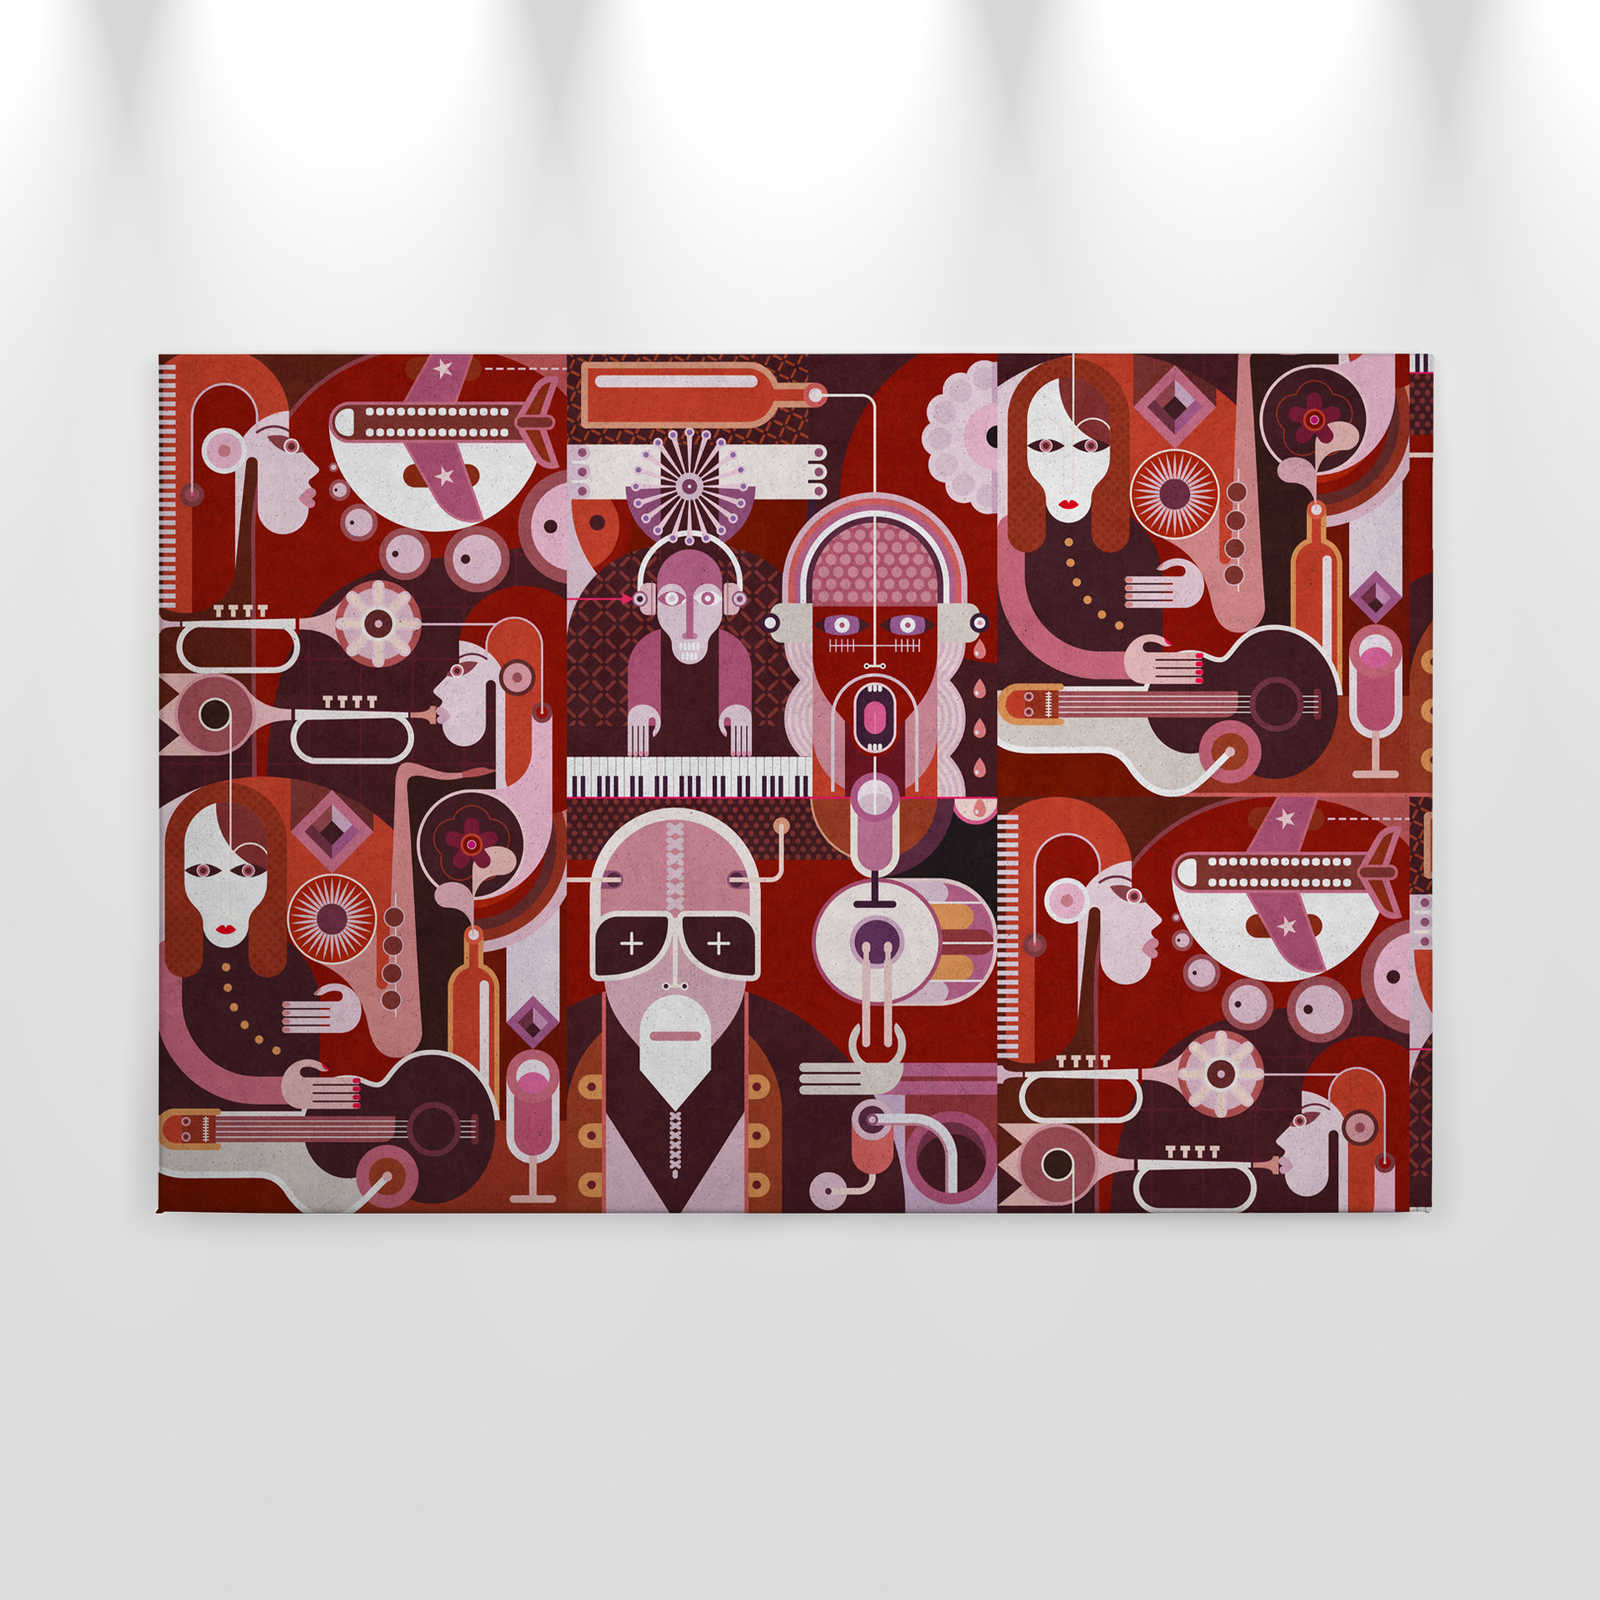             Wall of sound 2 - Tableau abstrait sur toile avec des visages dans une structure en béton - 0,90 m x 0,60 m
        